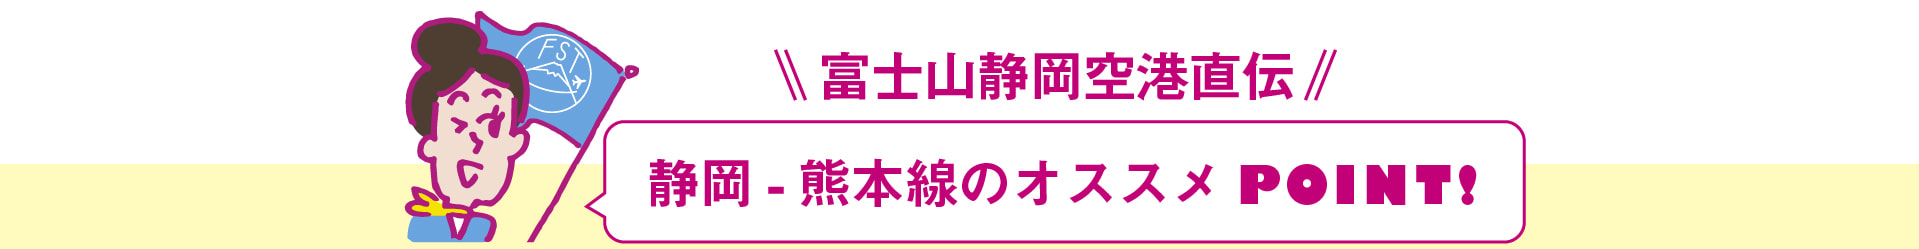 静岡-熊本便のオススメポイントの画像